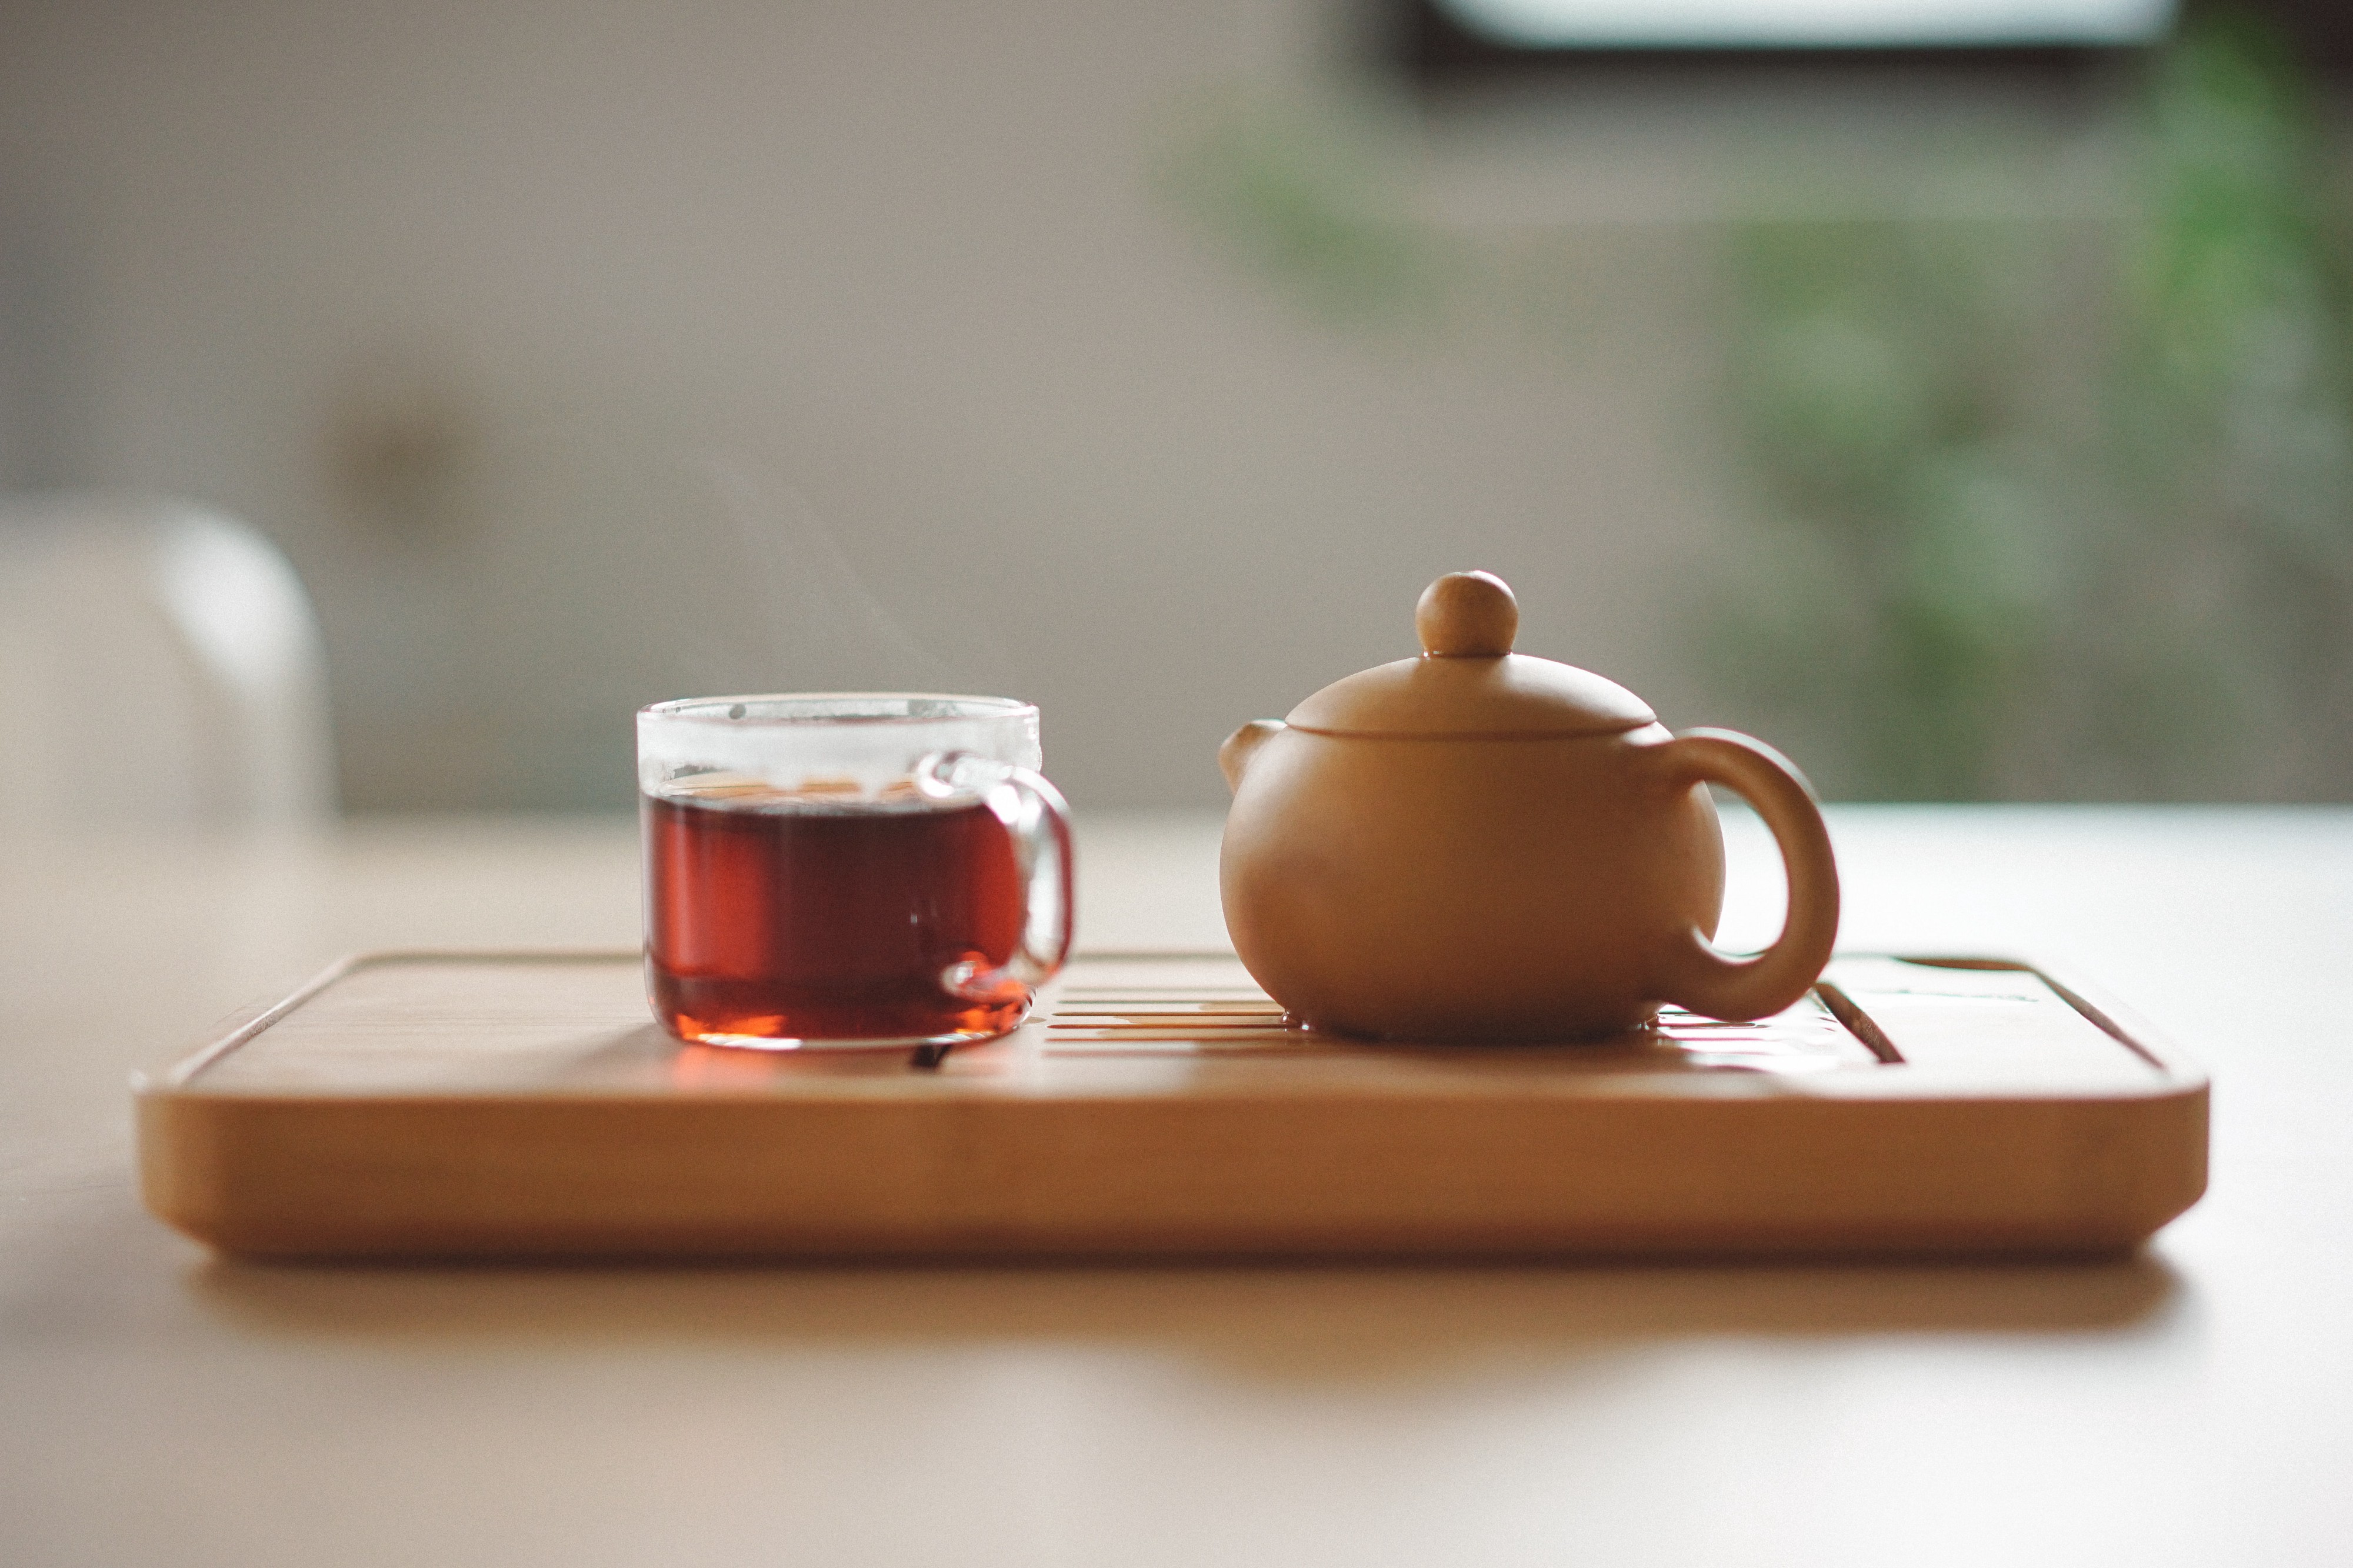 tray with glass mug and pot of tea